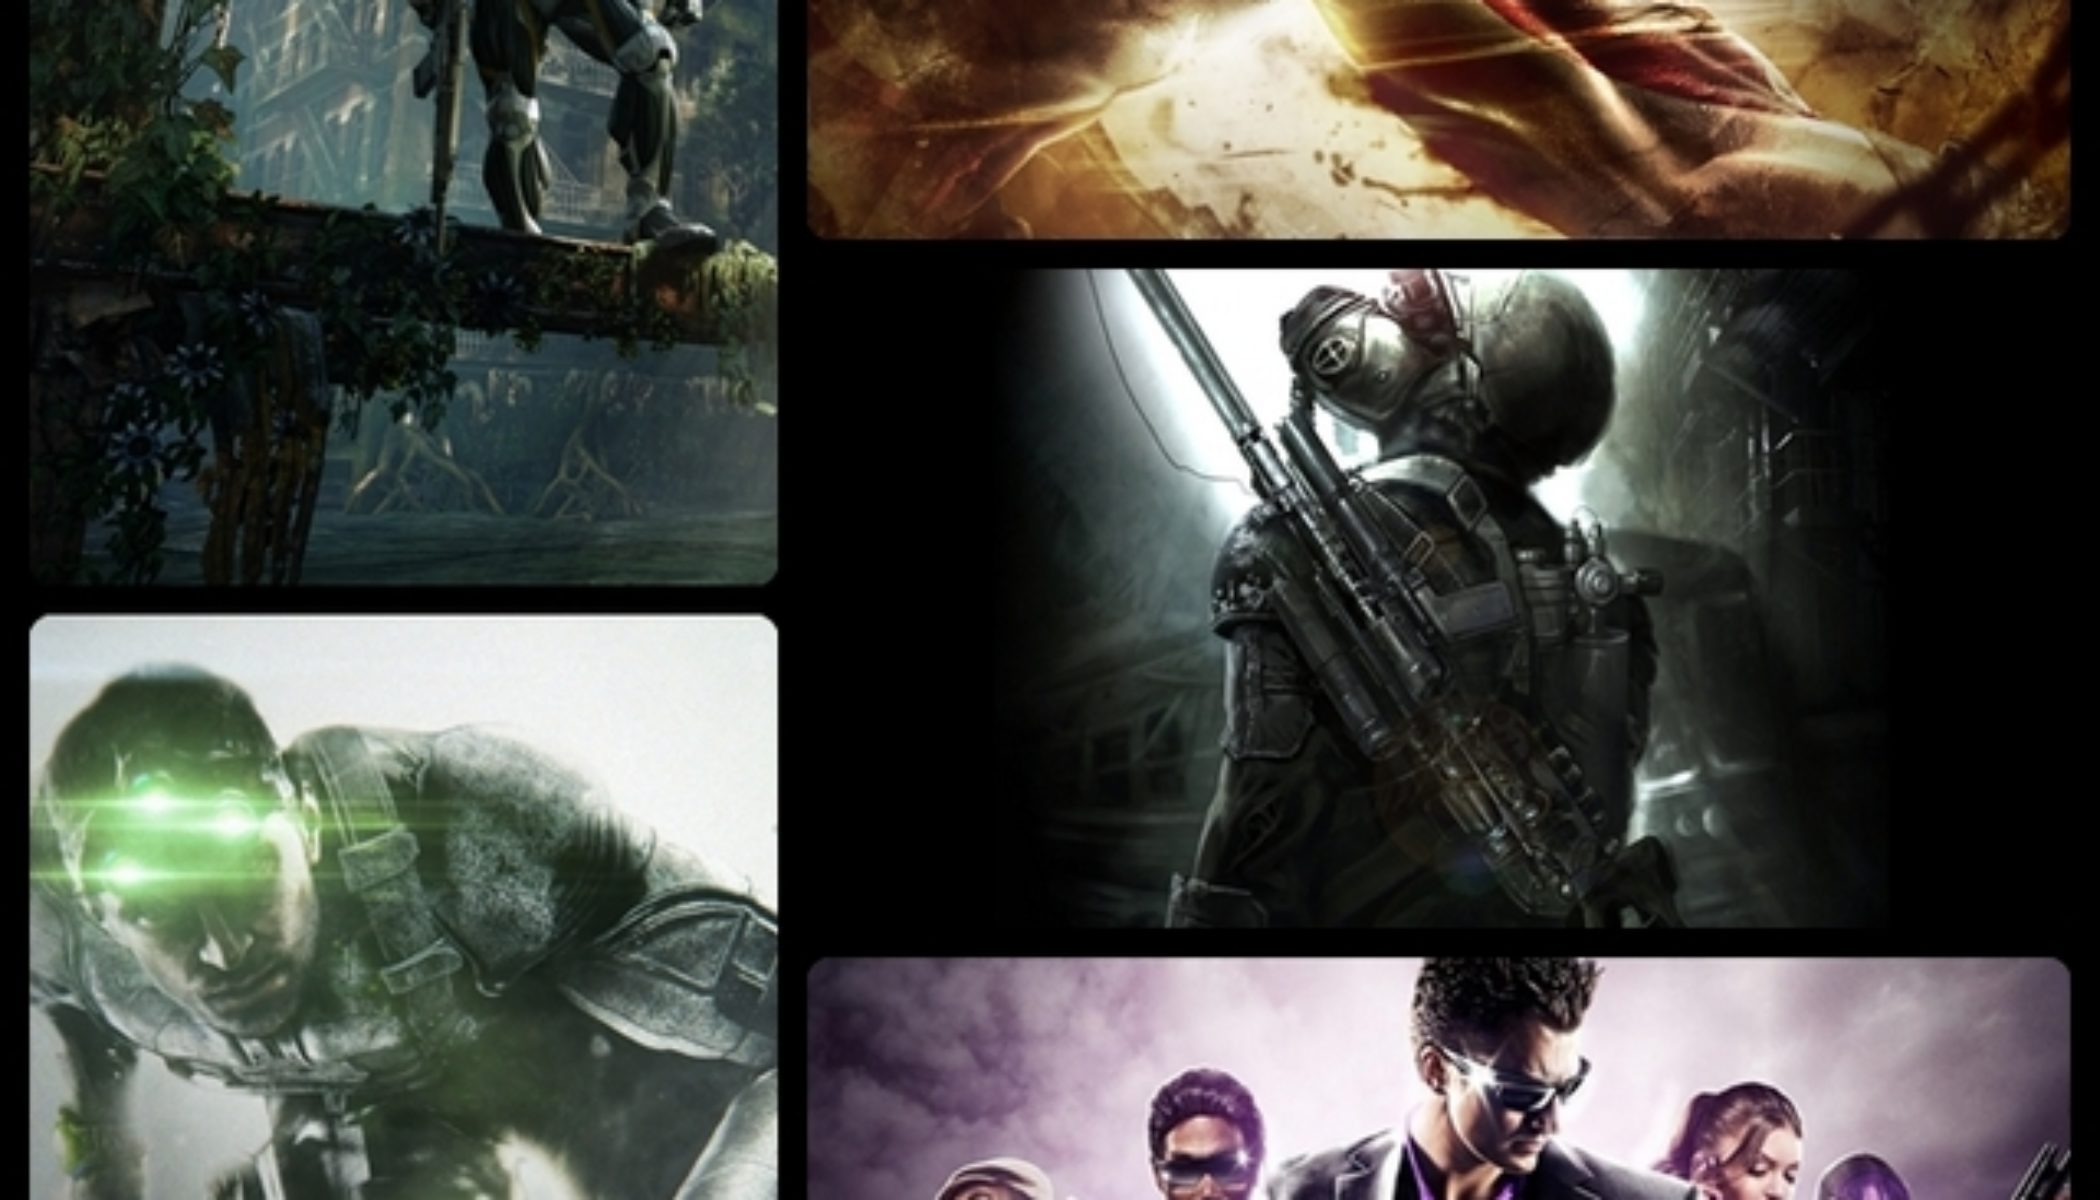 Review: Splinter Cell: Blacklist - Hardcore Gamer